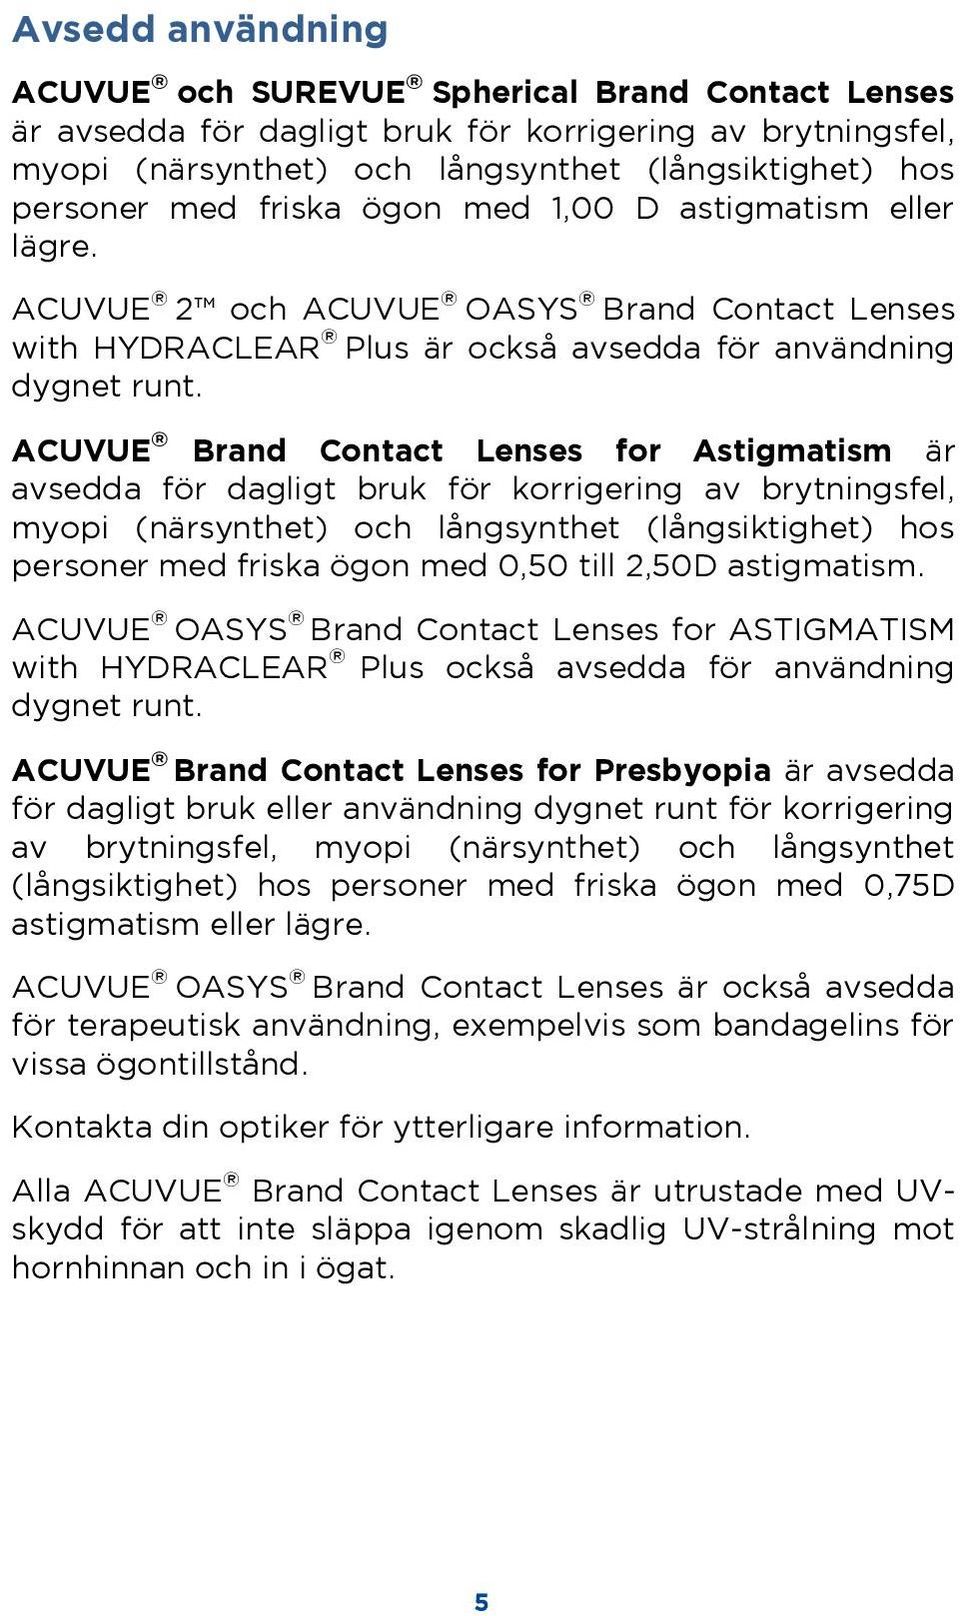 ACUVUE Brand Contact Lenses for Astigmatism är avsedda för dagligt bruk för korrigering av brytningsfel, myopi (närsynthet) och långsynthet (långsiktighet) hos personer med friska ögon med 0,50 till